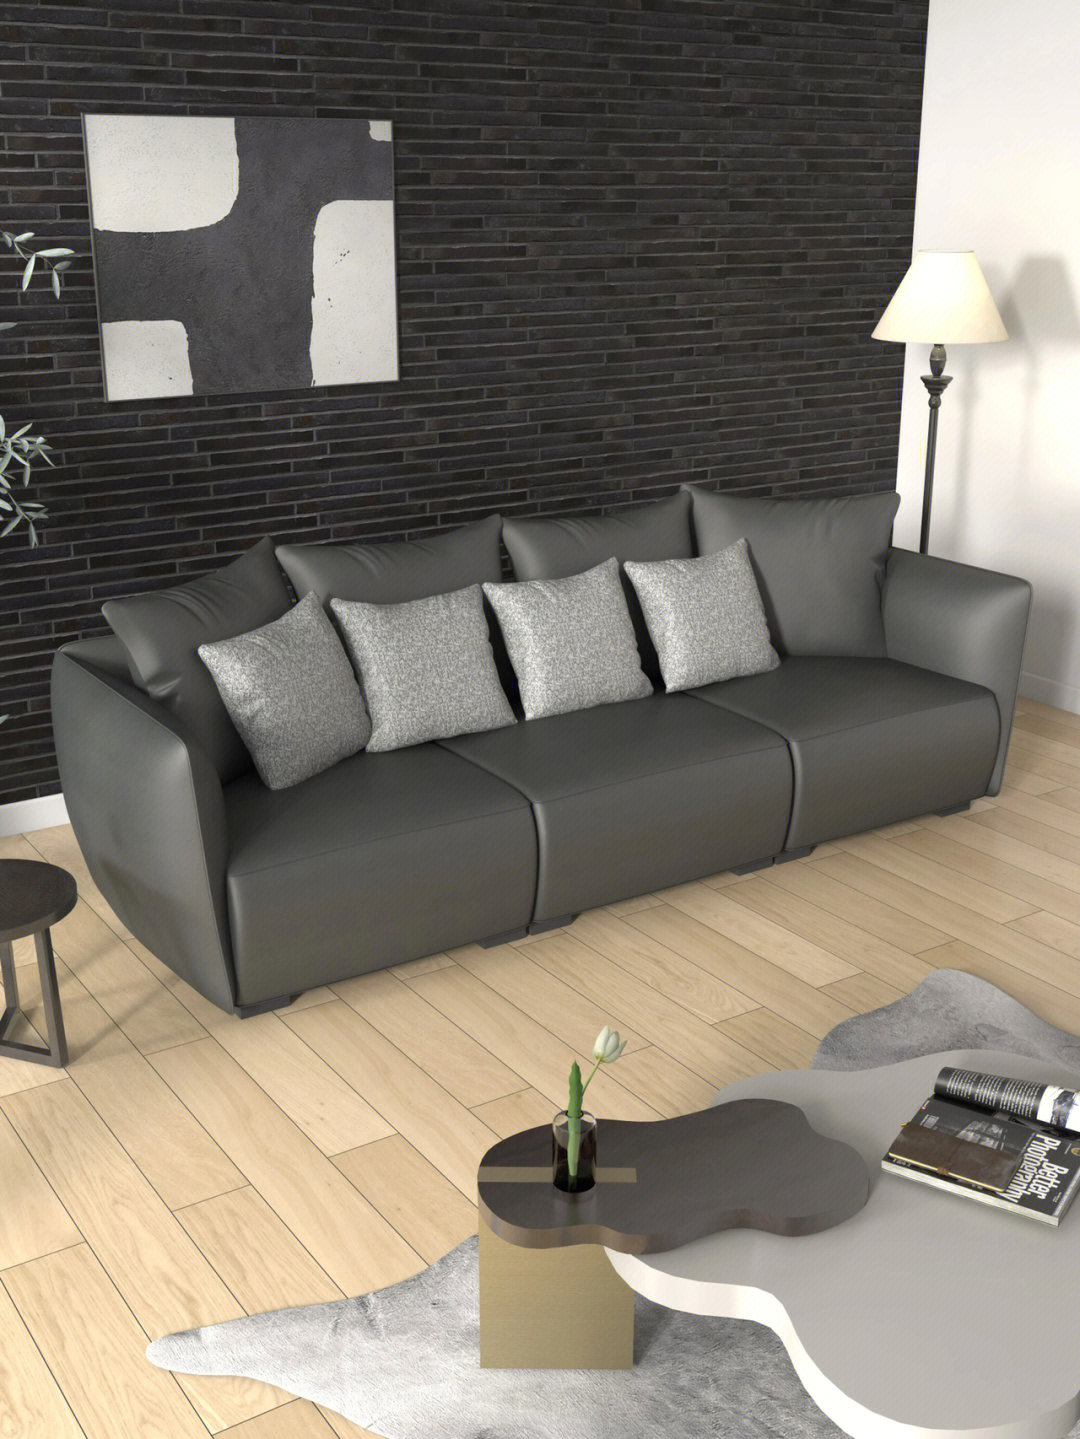 材质 /整张沙发全皮包裹皮质细腻,丰富质感脚架是黑橡木制作的简约又